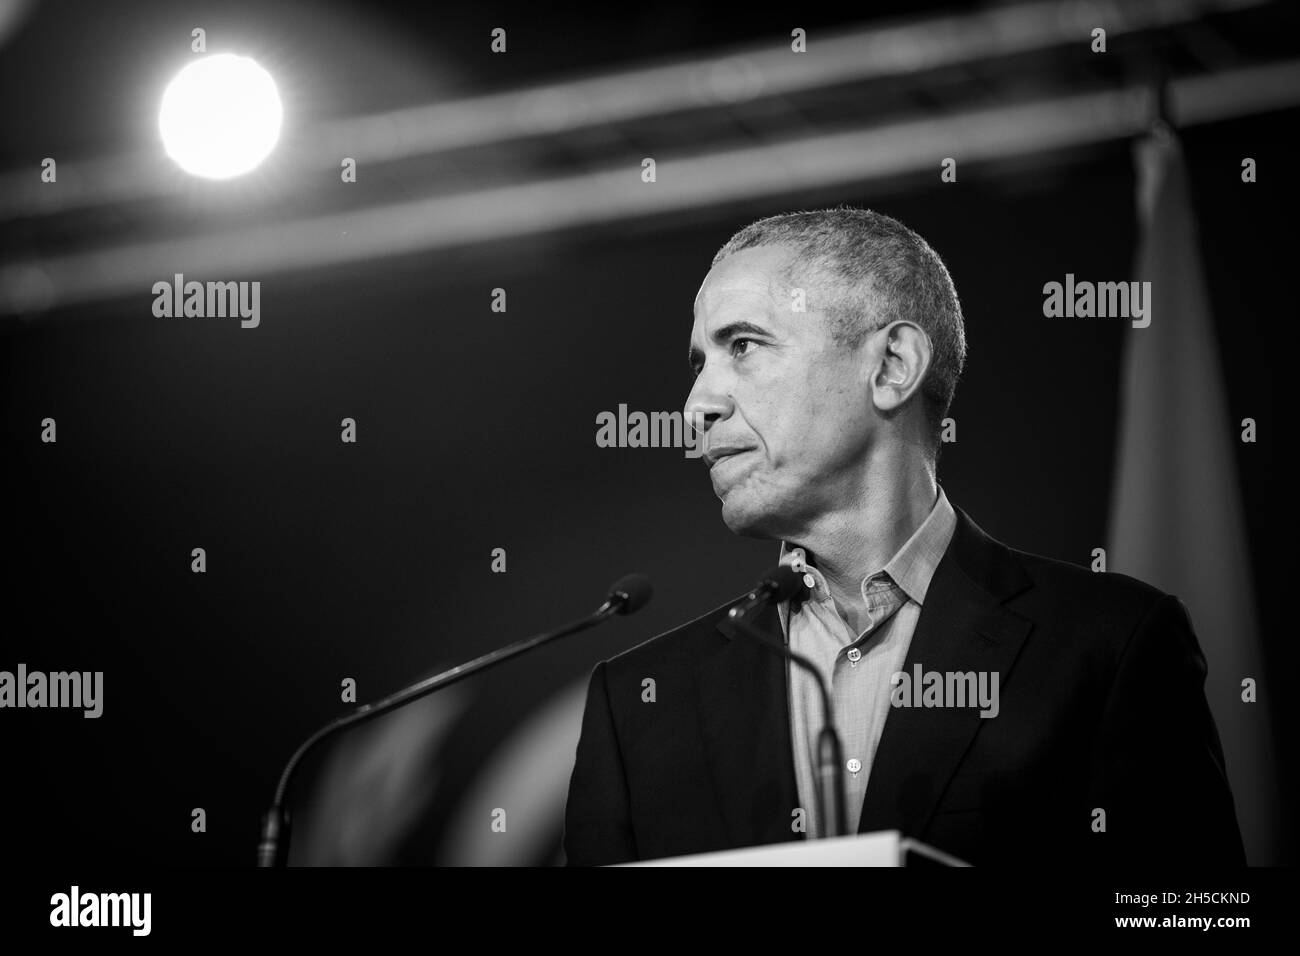 Glasgow, Schottland, Großbritannien. Barack Obama, ehemaliger Präsident der Vereinigten Staaten von Amerika, spricht auf der 26. UN-Klimakonferenz, bekannt als COP26, in Glasgow, Schottland, Großbritannien, Am 8. November 2021. Foto:Jeremy Sutton-Hibbert/Alamy Live News. Stockfoto